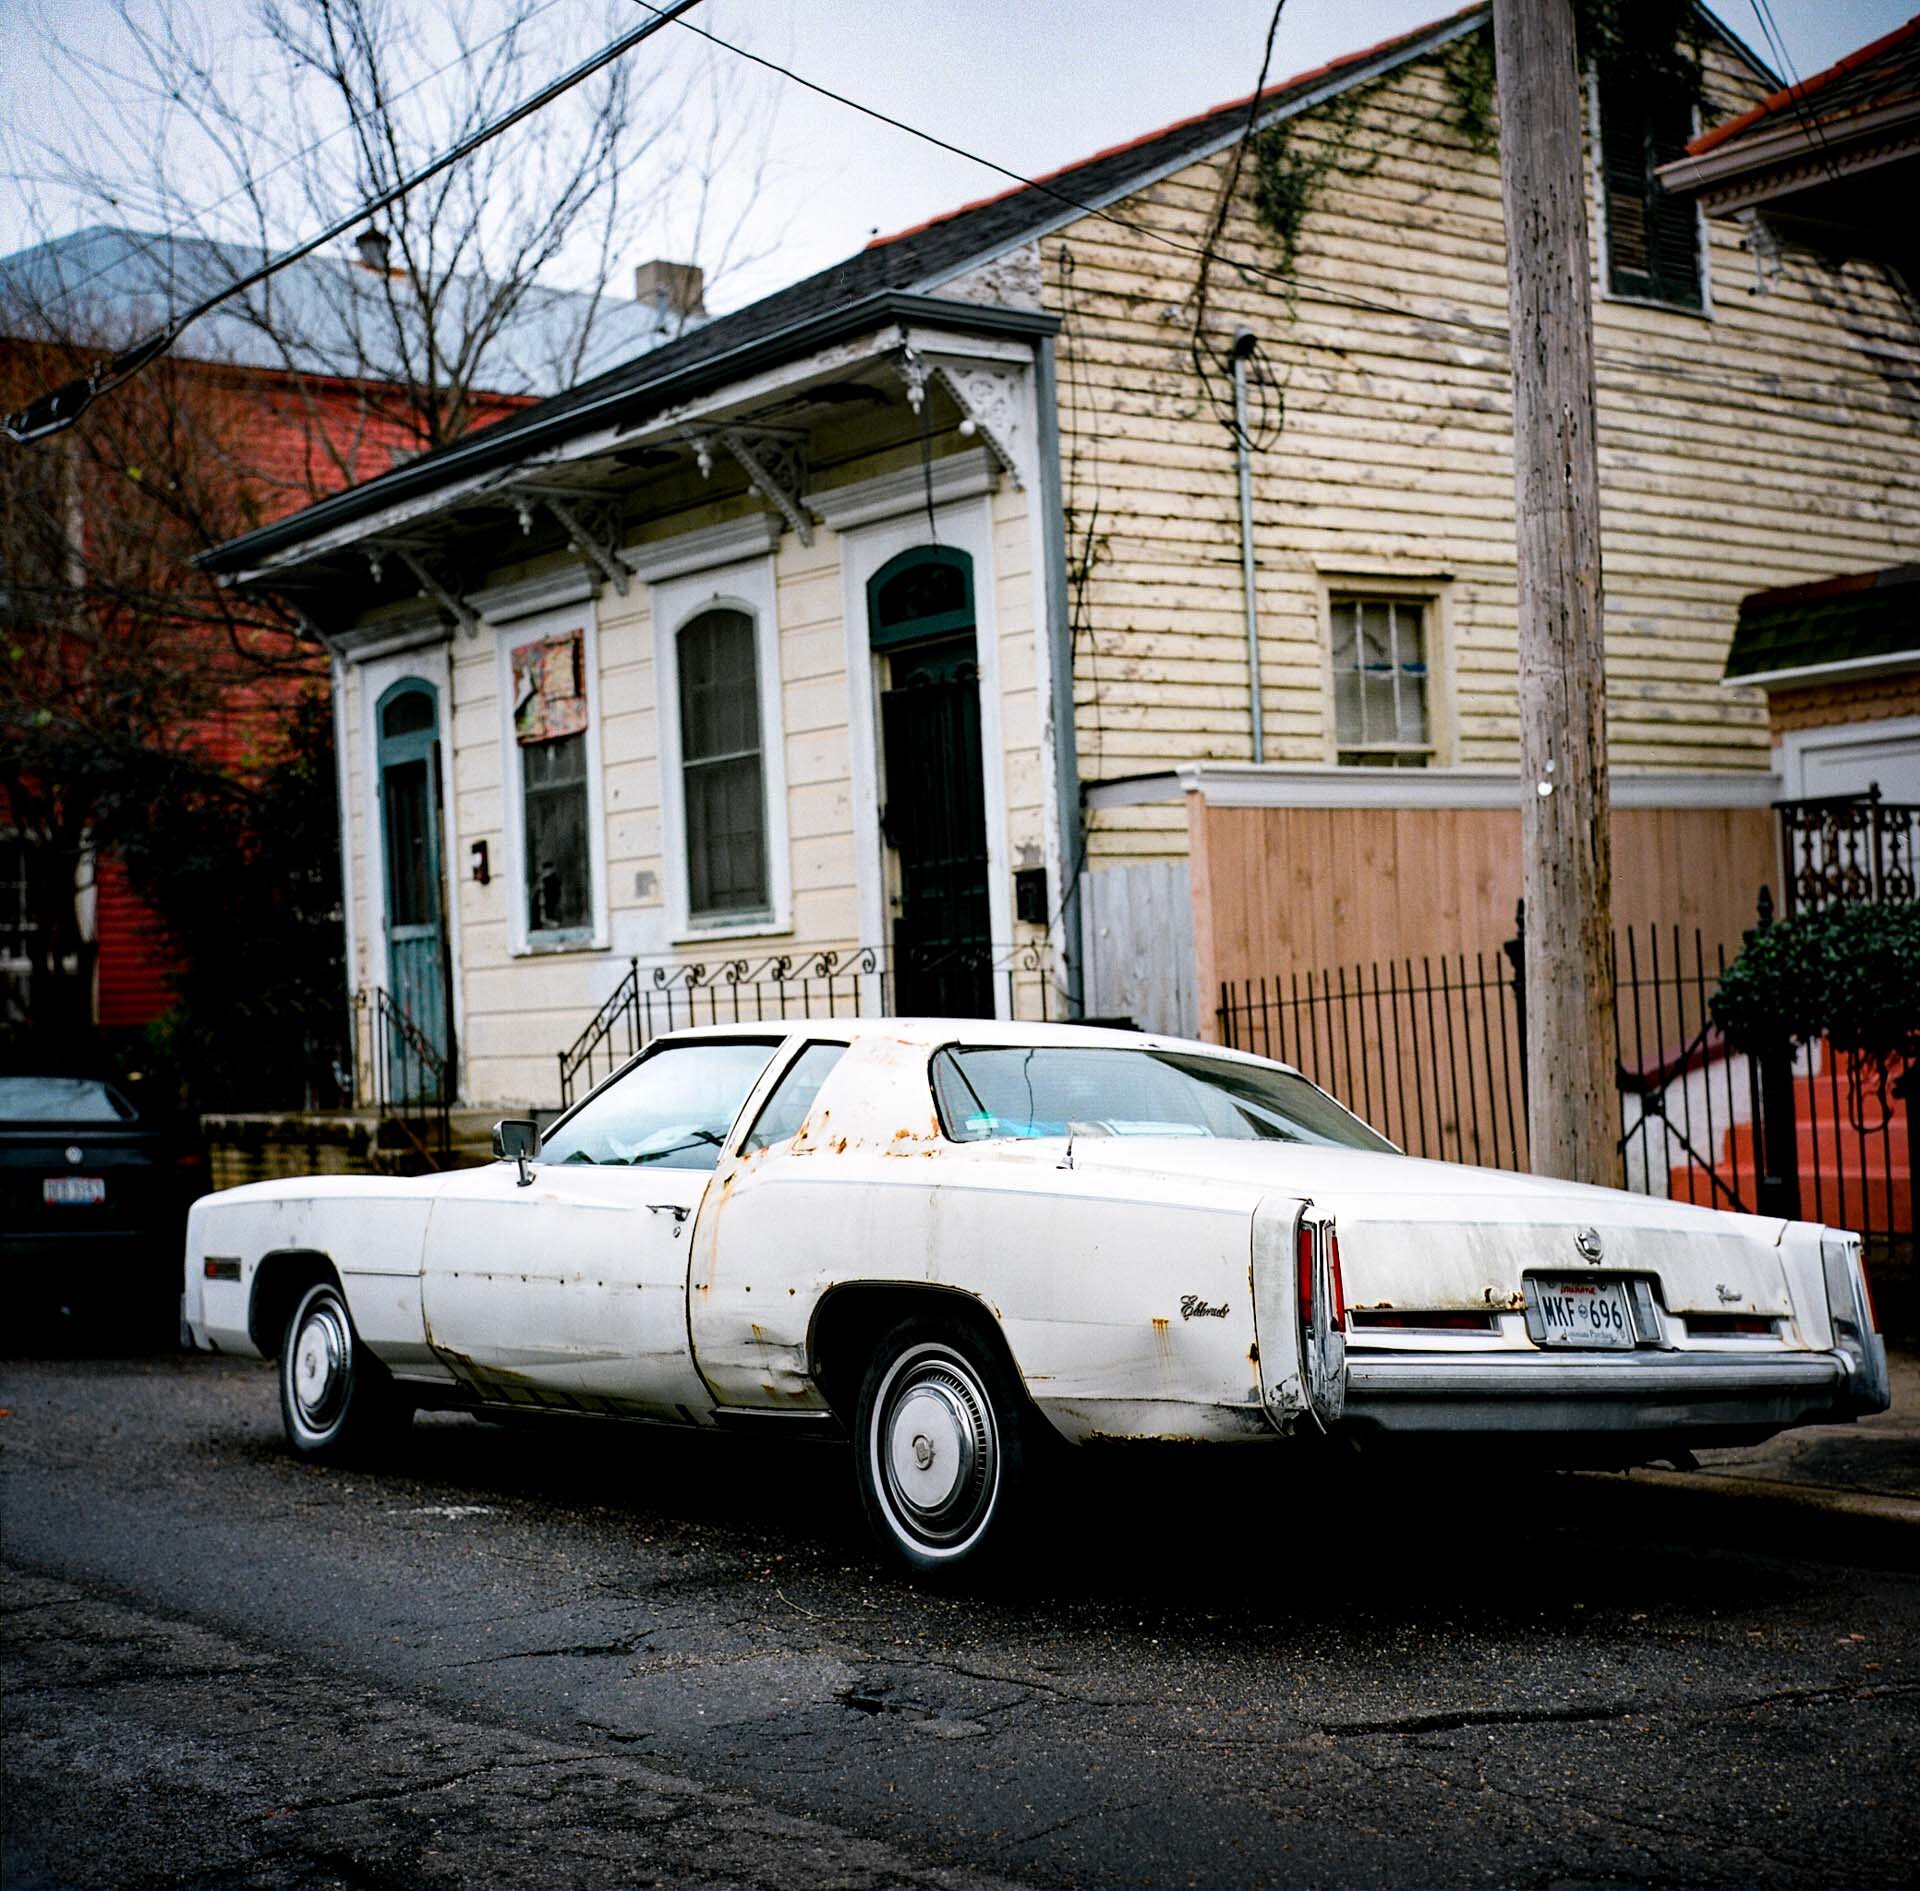  New Orleans, LA, 2010 